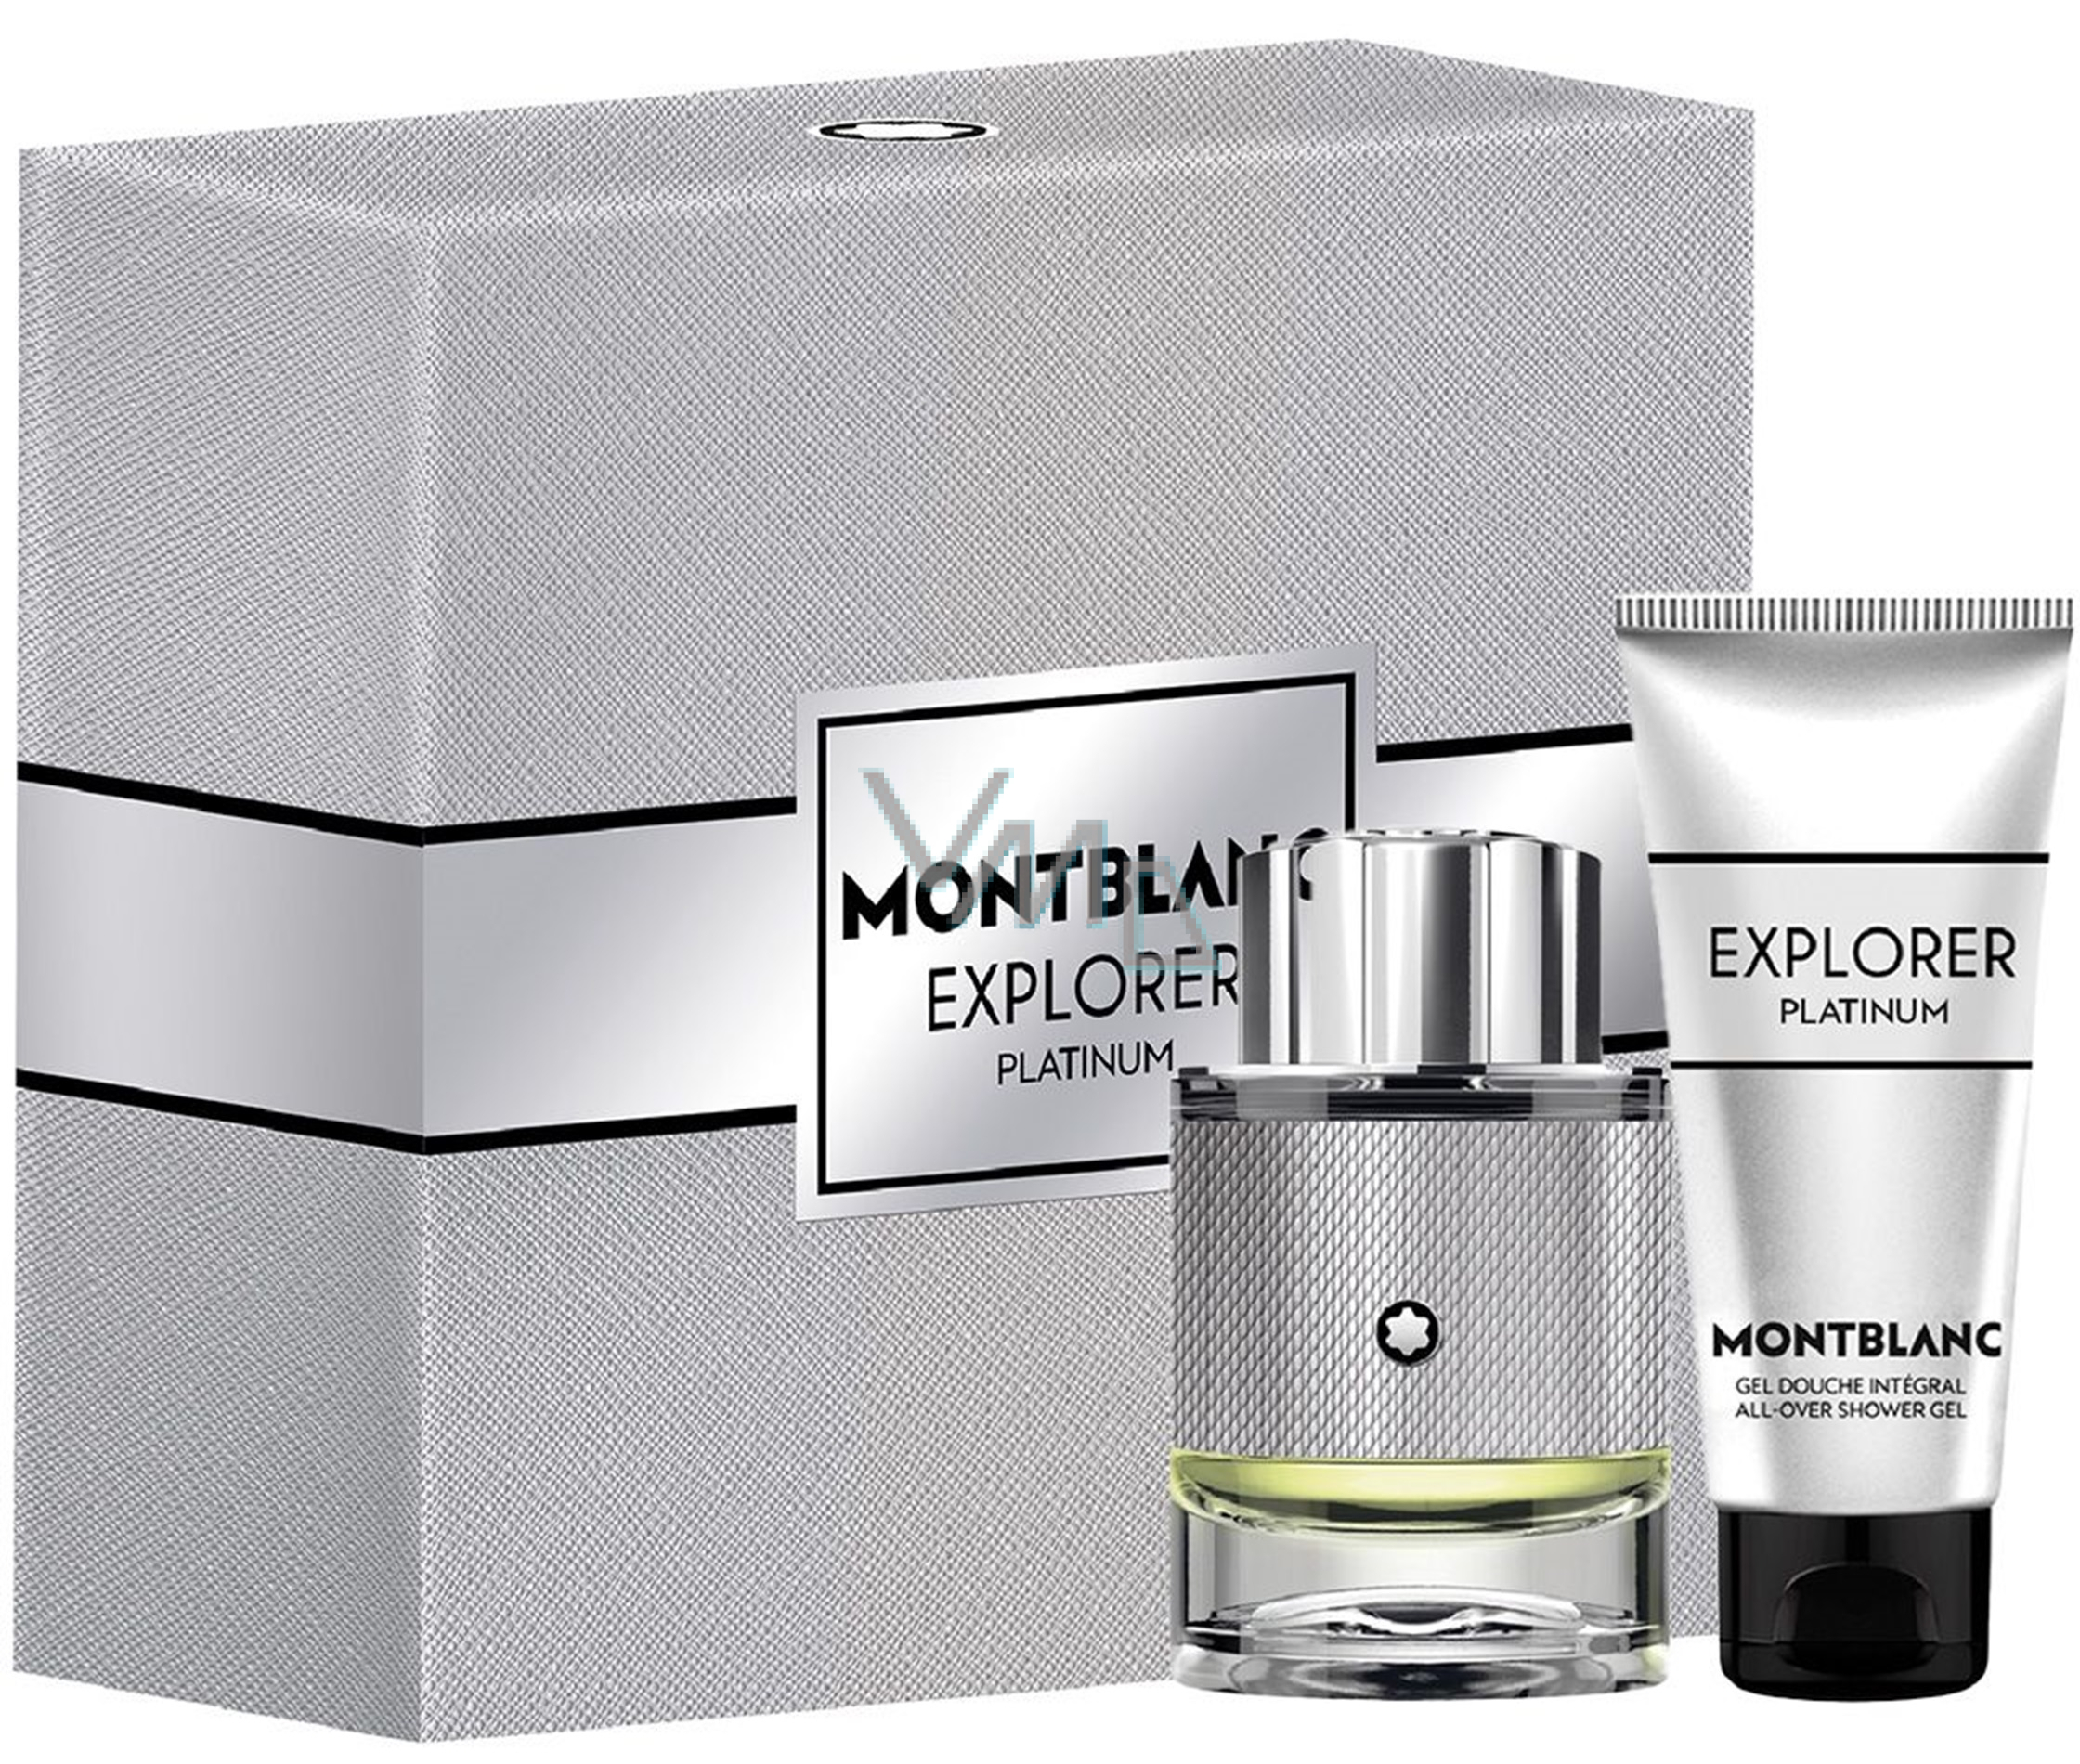 Montblanc Explorer Platinum eau de set parfum shower for VMD parfumerie - drogerie 100 gift gel ml 60 - ml, men 